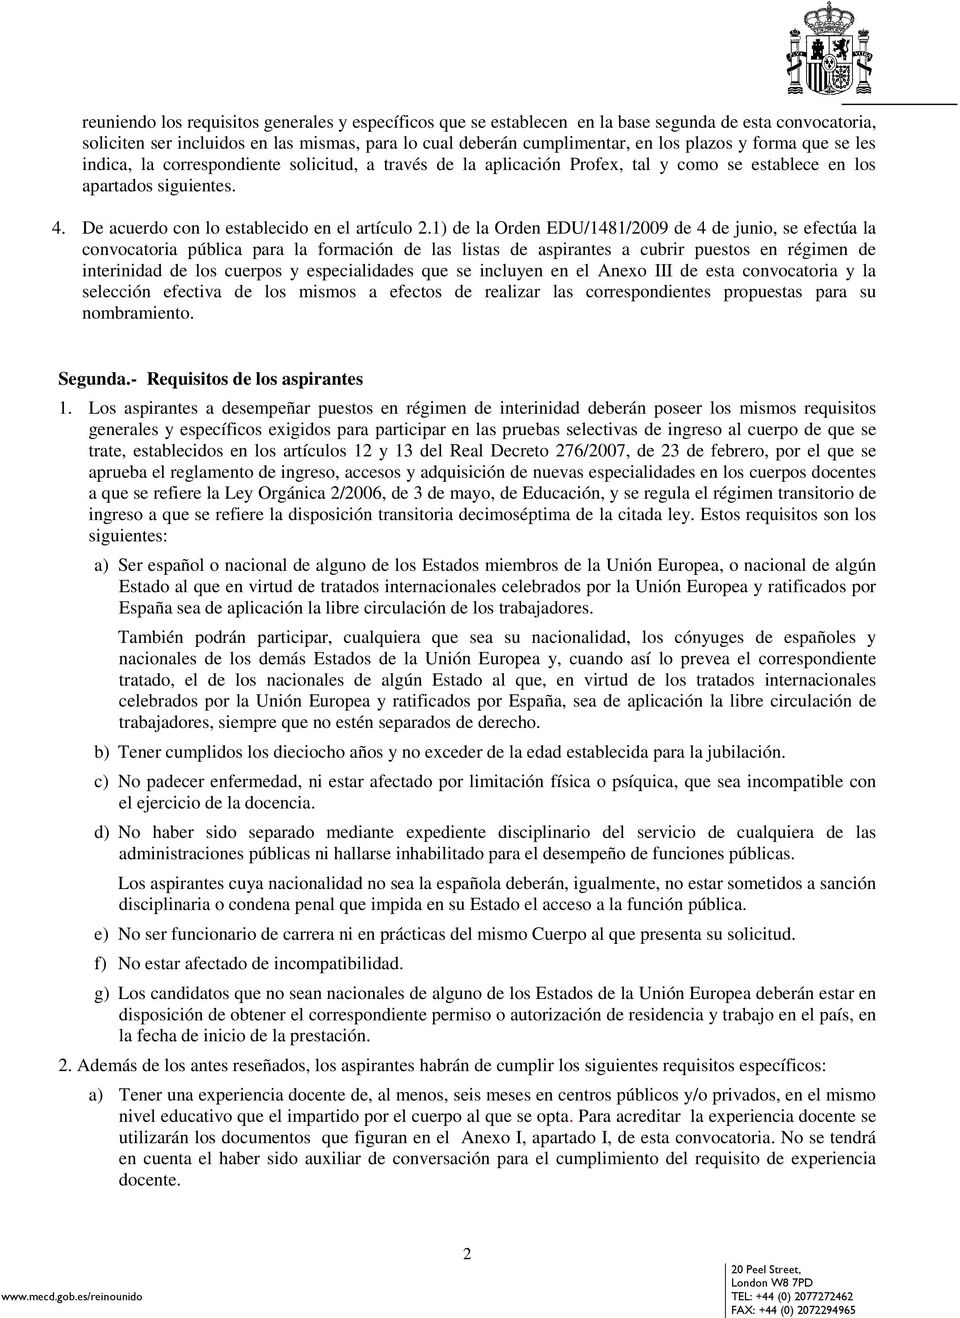 1) de la Orden EDU/1481/2009 de 4 de junio, se efectúa la convocatoria pública para la formación de las listas de aspirantes a cubrir puestos en régimen de interinidad de los cuerpos y especialidades